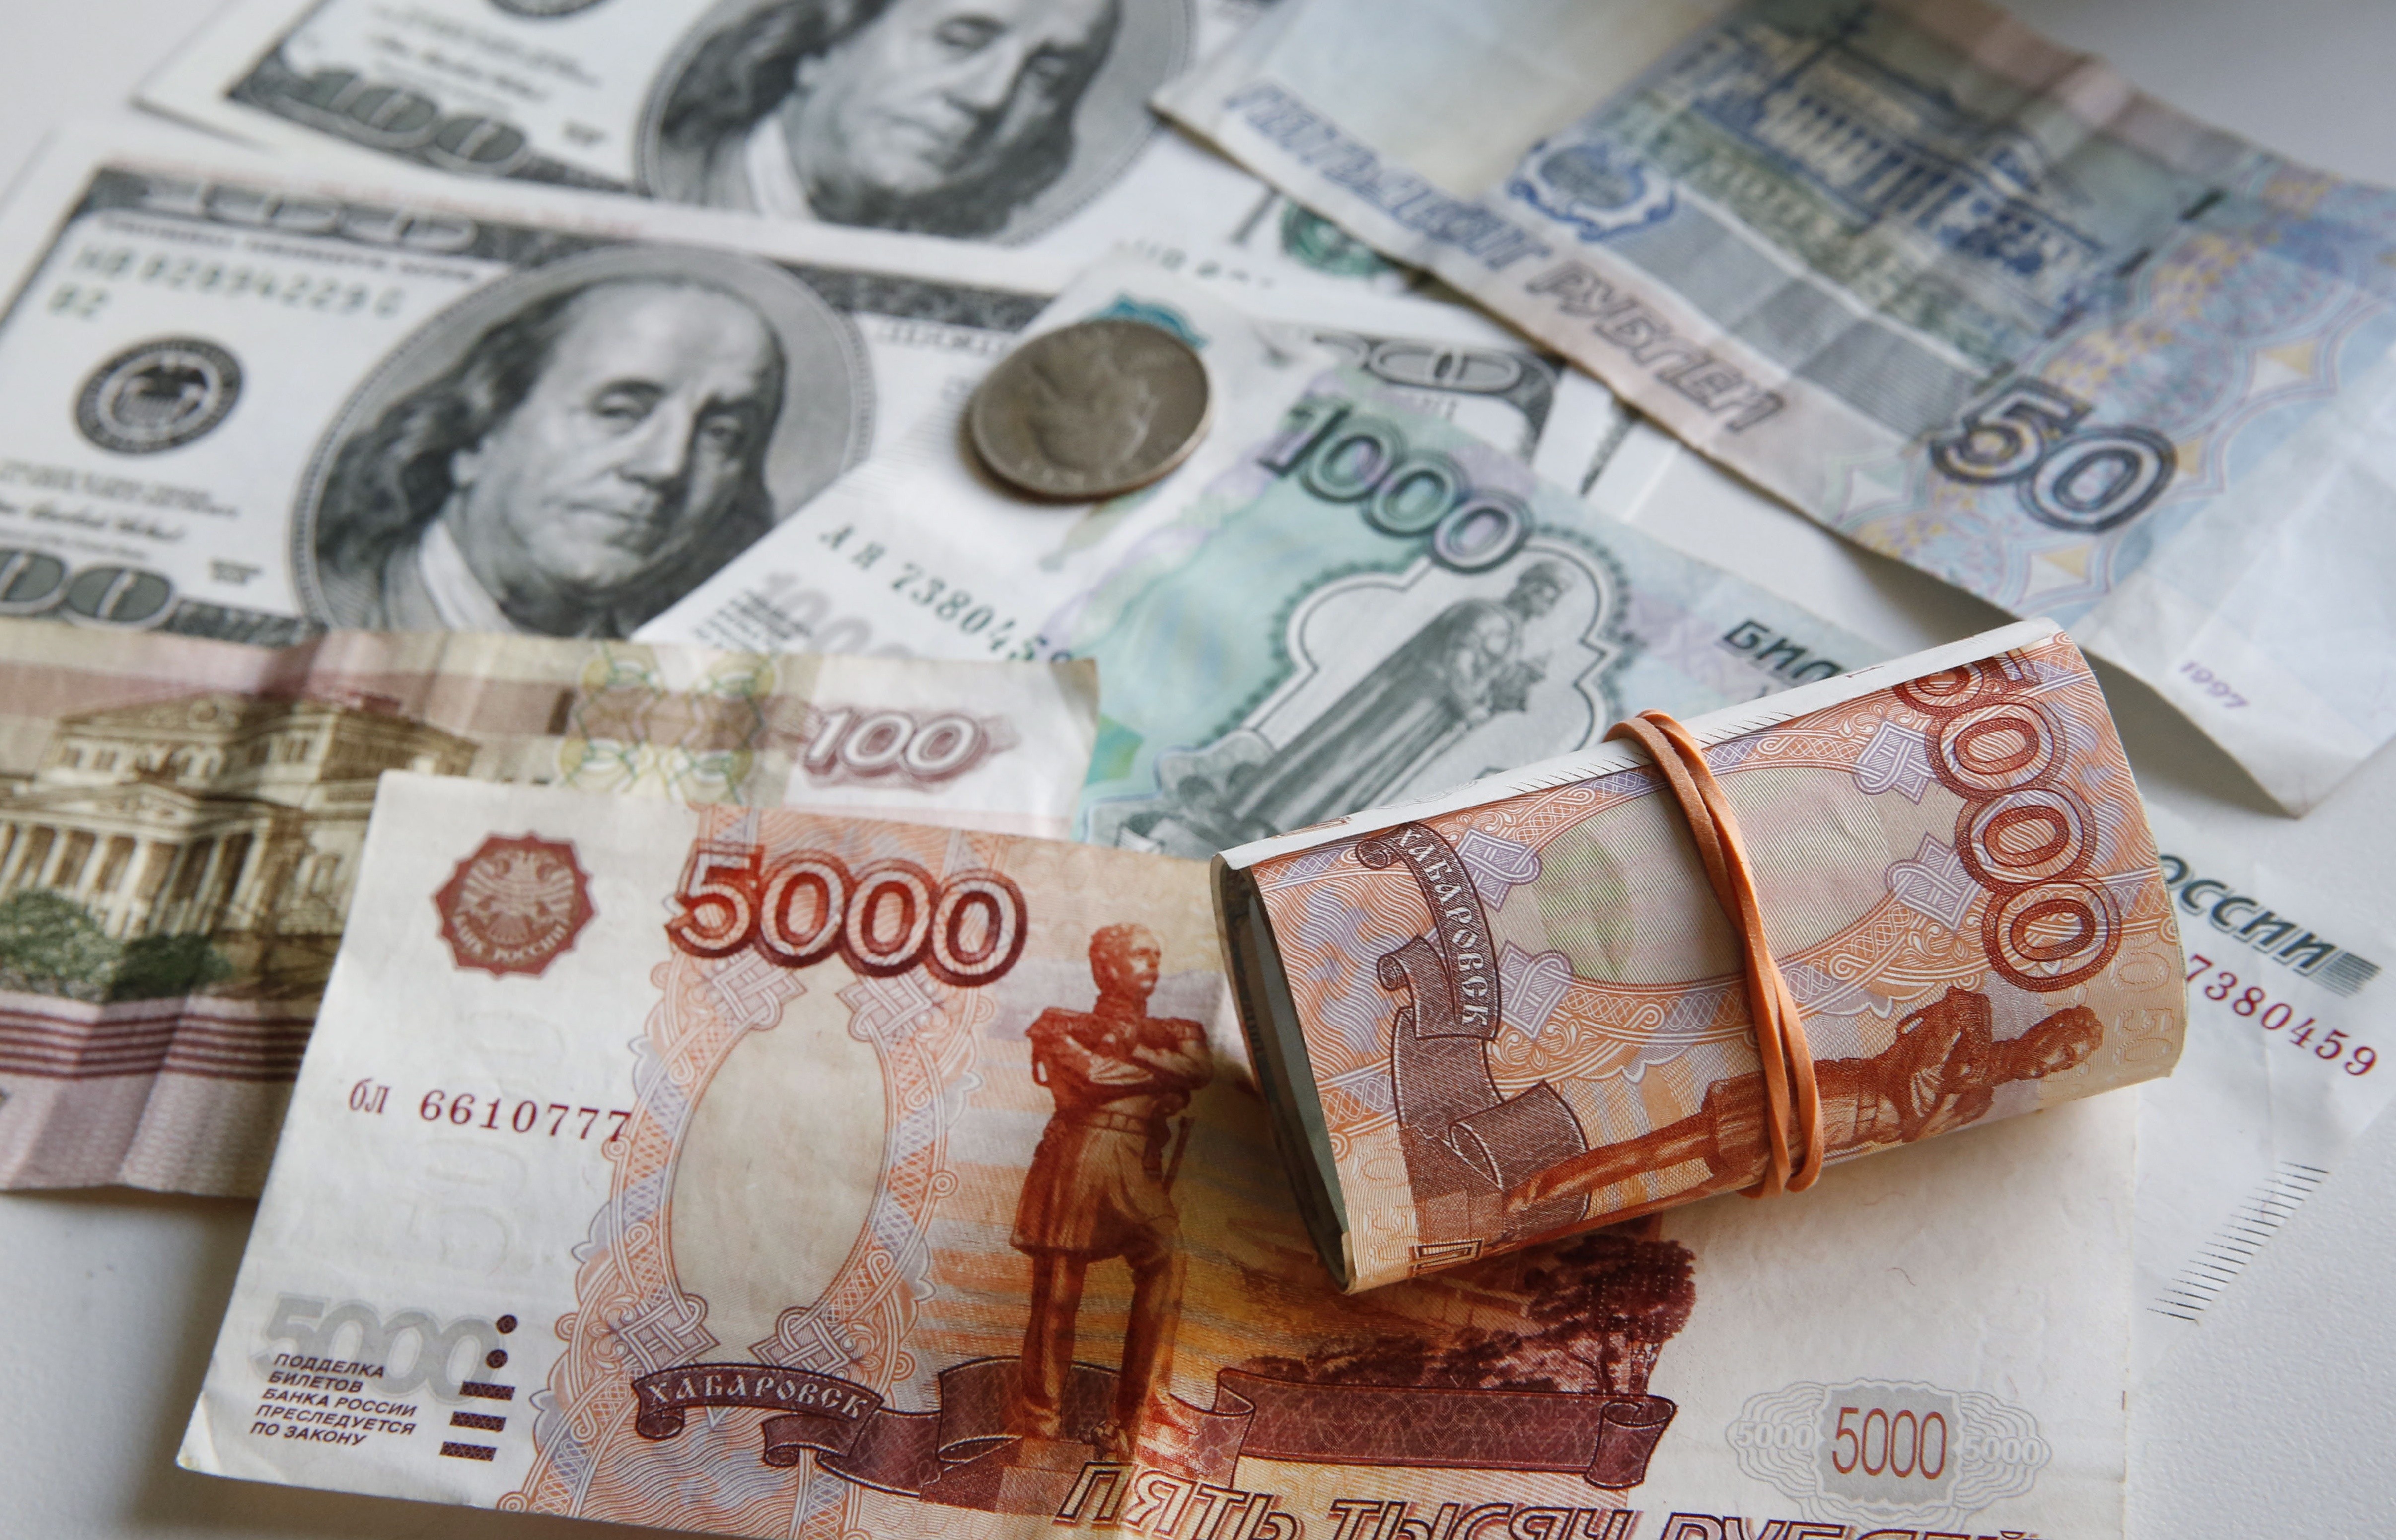 Обмен валюты доллар российский рубль платить биткоинами